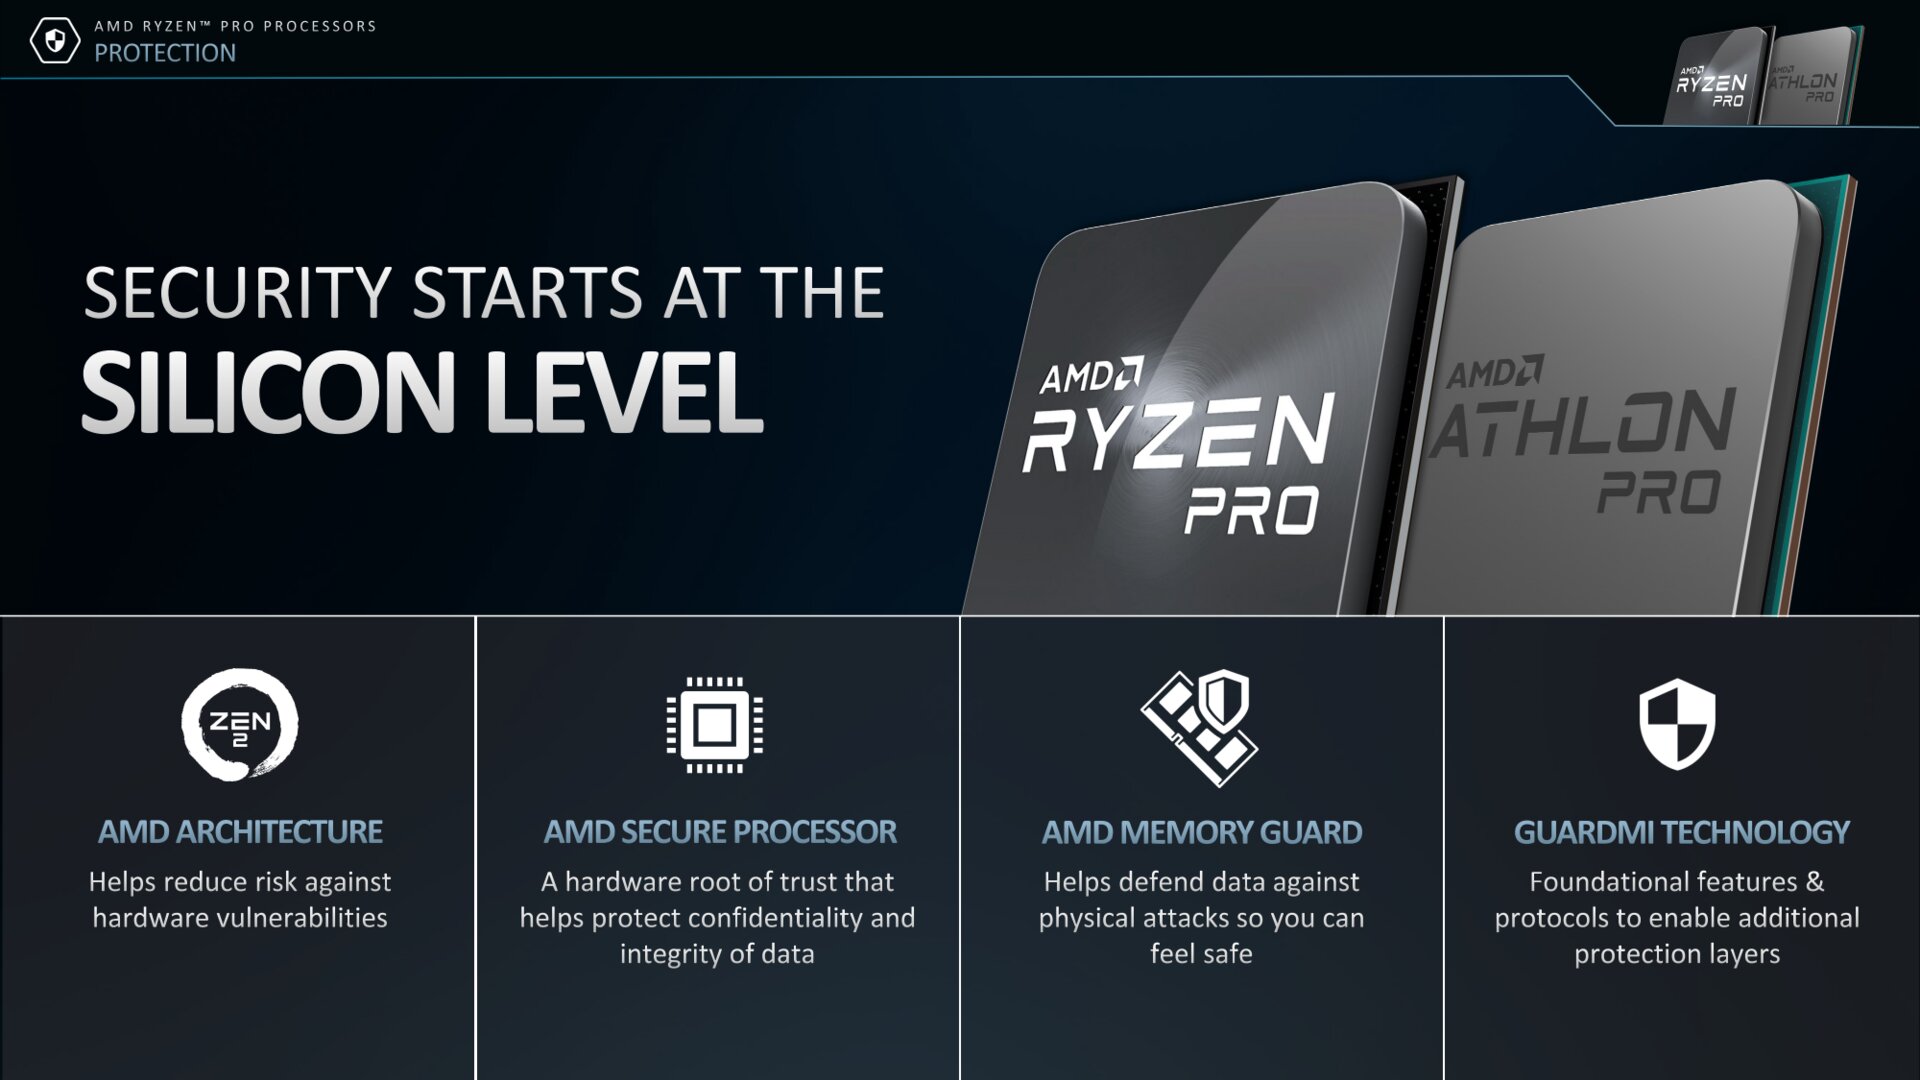 AMD stellt Ryzen Pro 3000 vor